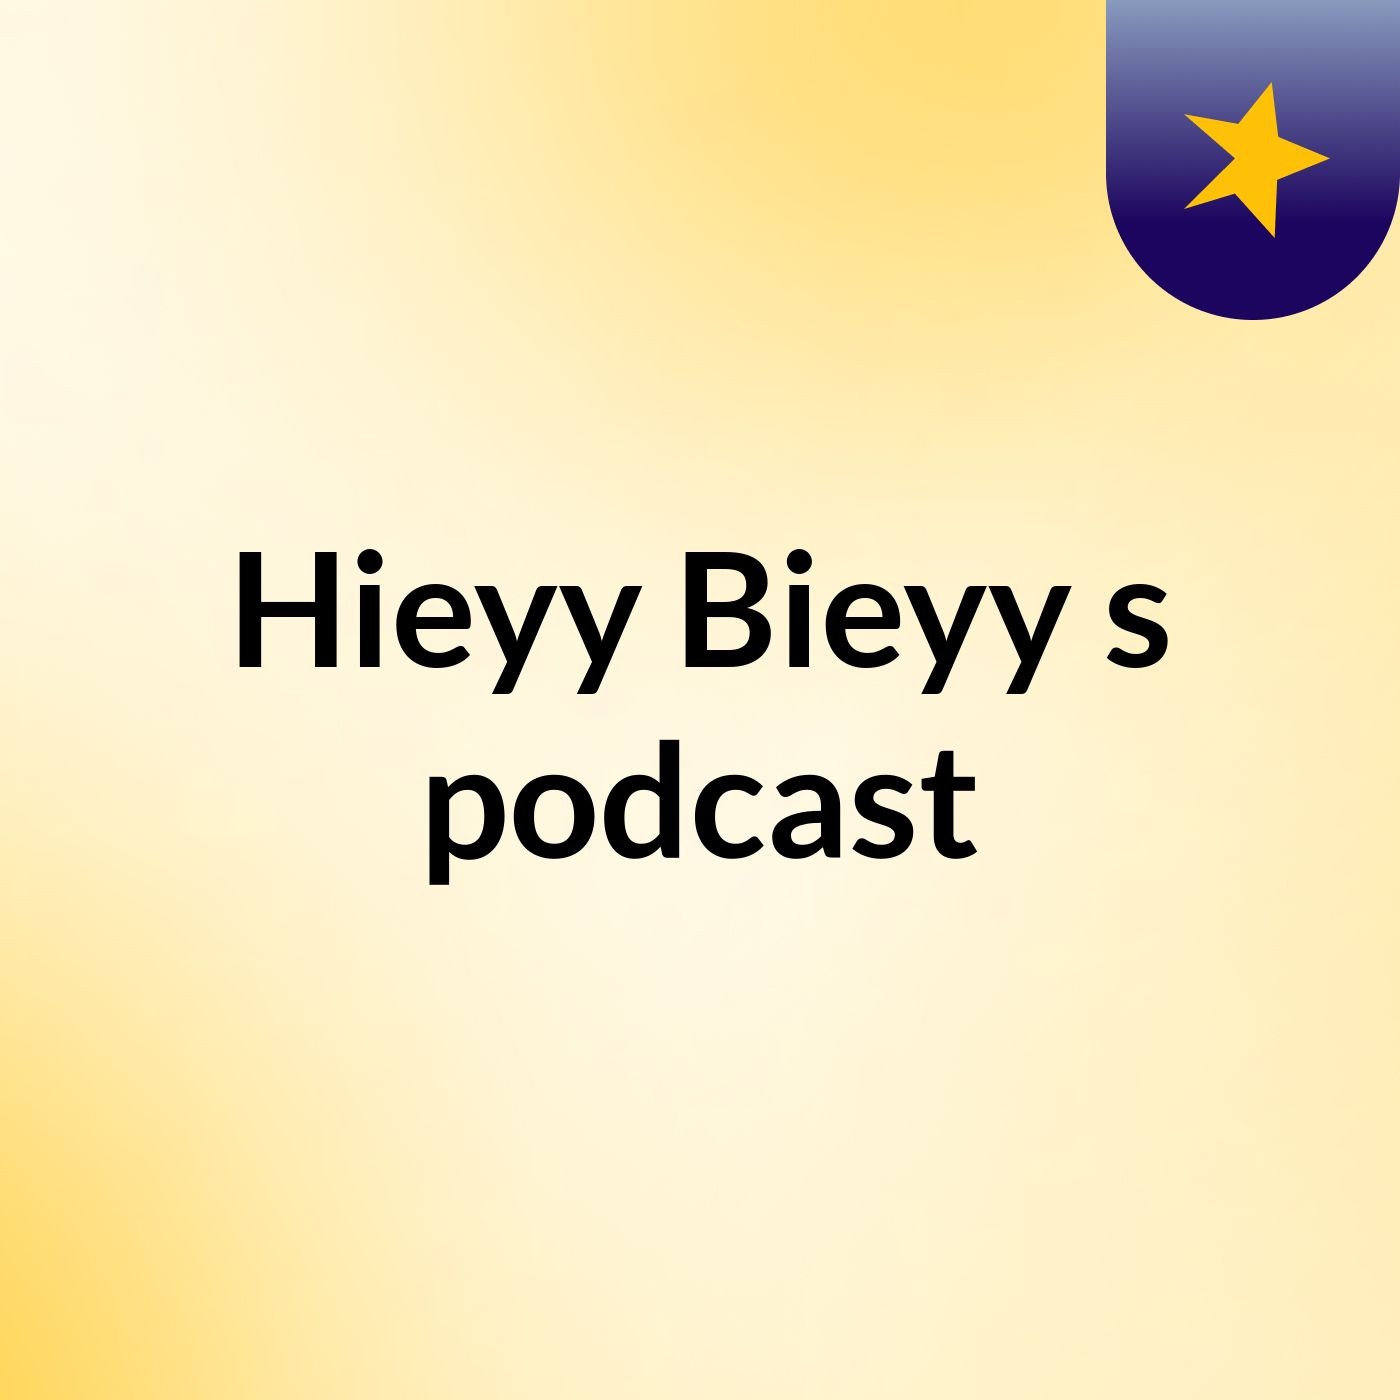 Hieyy Bieyy's podcast